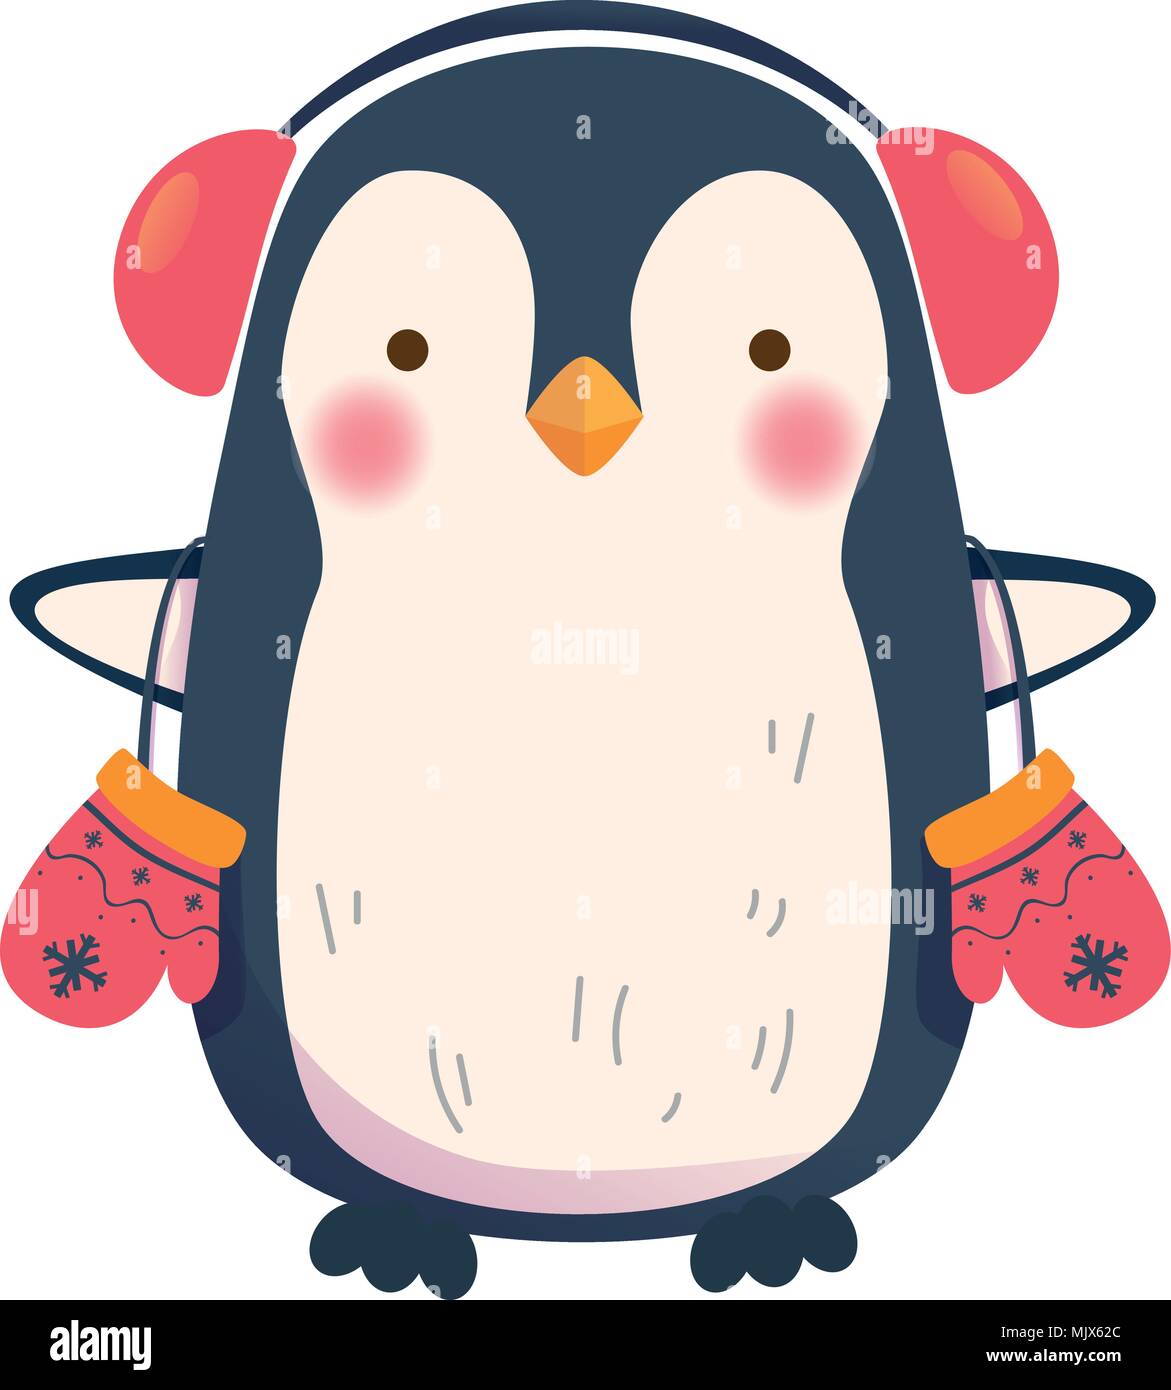 penguin with headphones Stock Vector